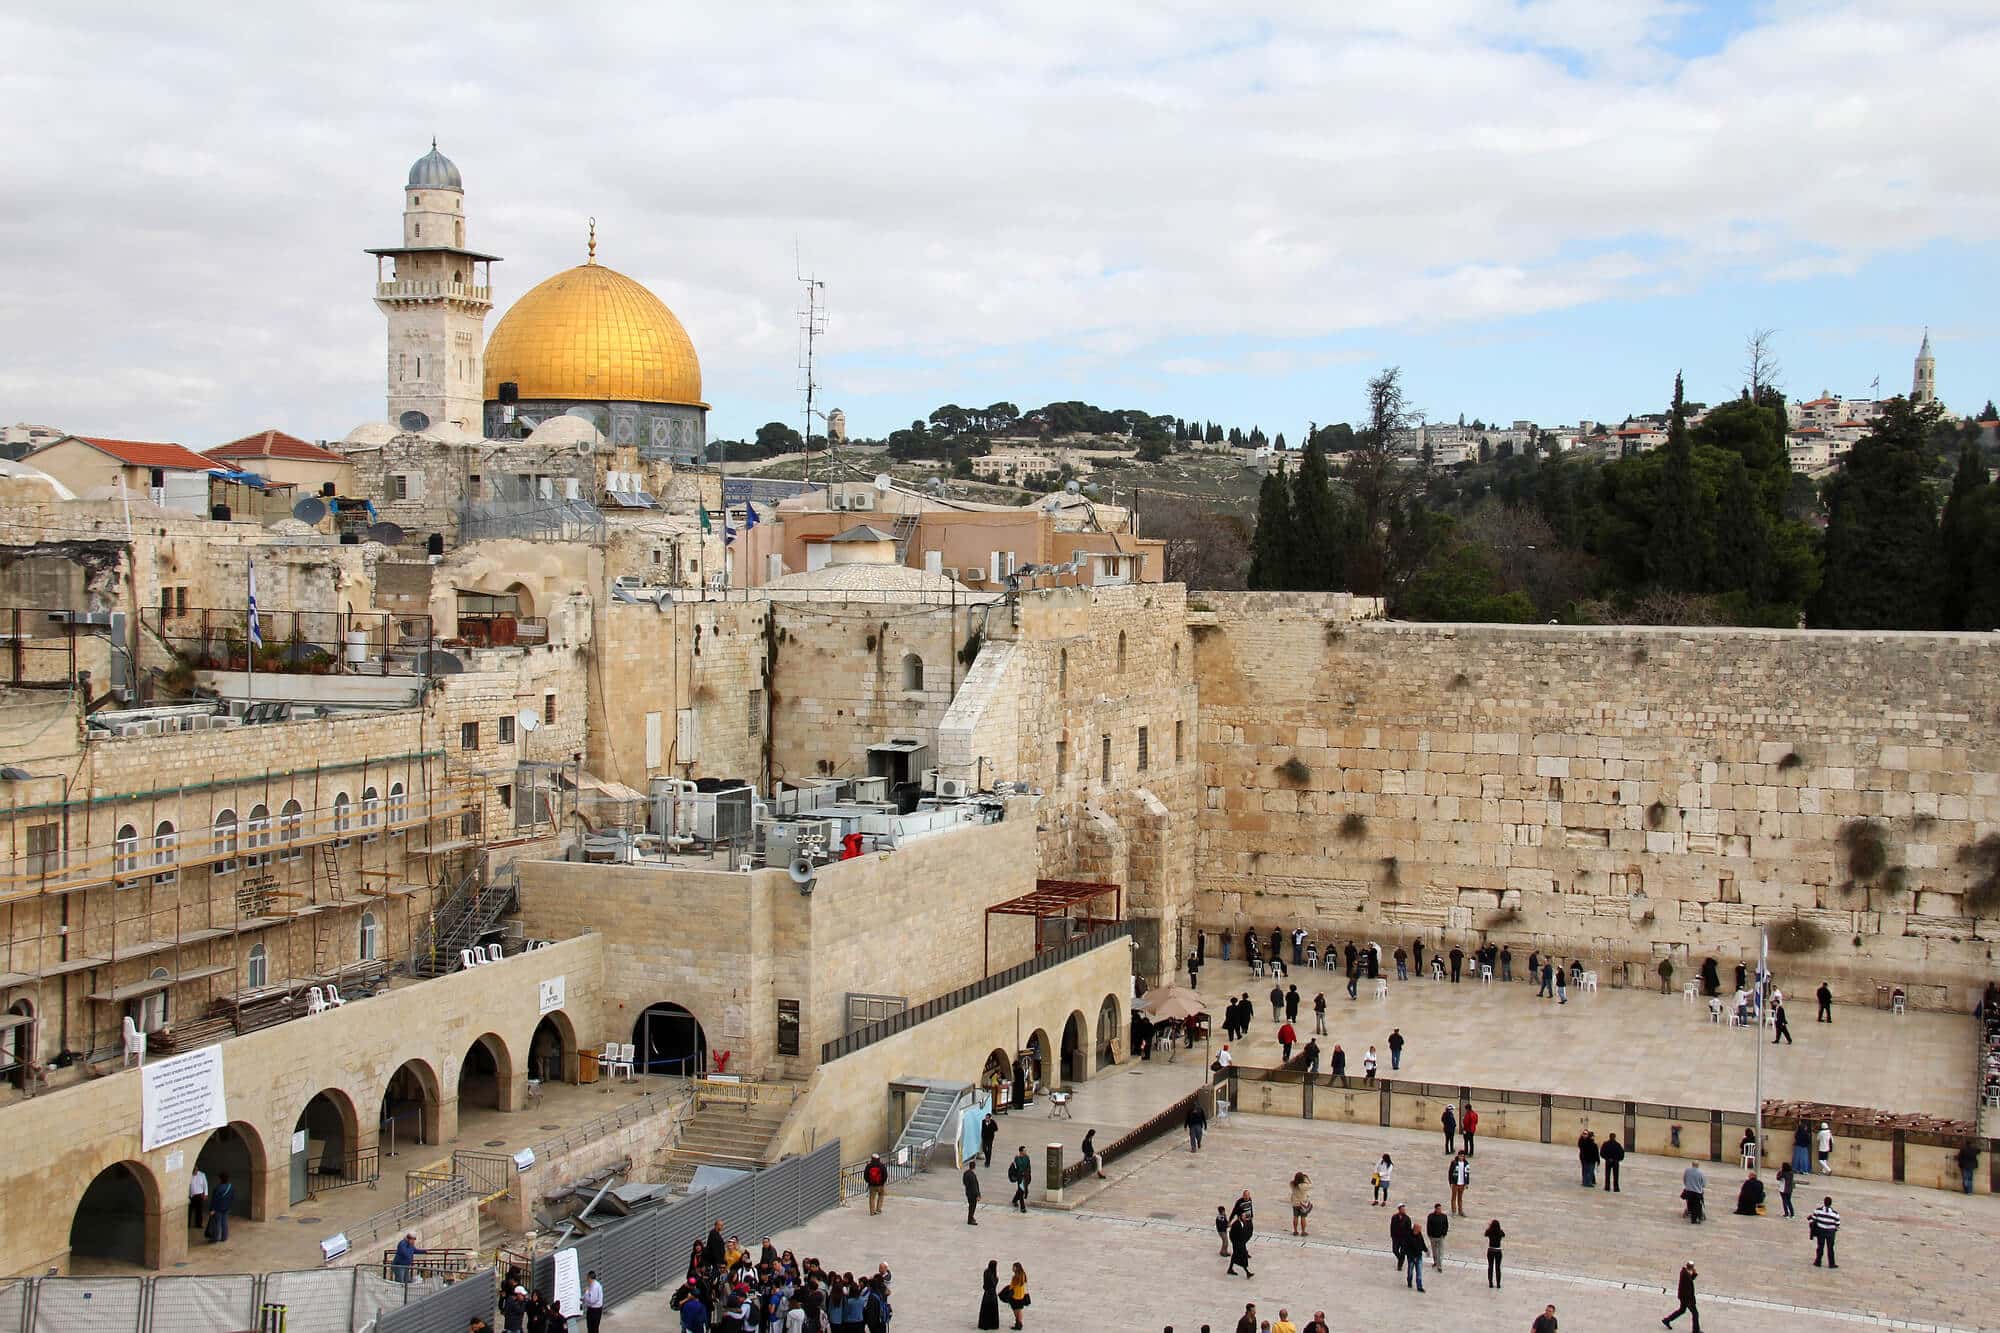 אתרים יהודים, נוצרים ומוסלמים בירושלים. באיזורים יבשים יותר.  <a href="https://depositphotos.com. ">המחשה: depositphotos.com</a>